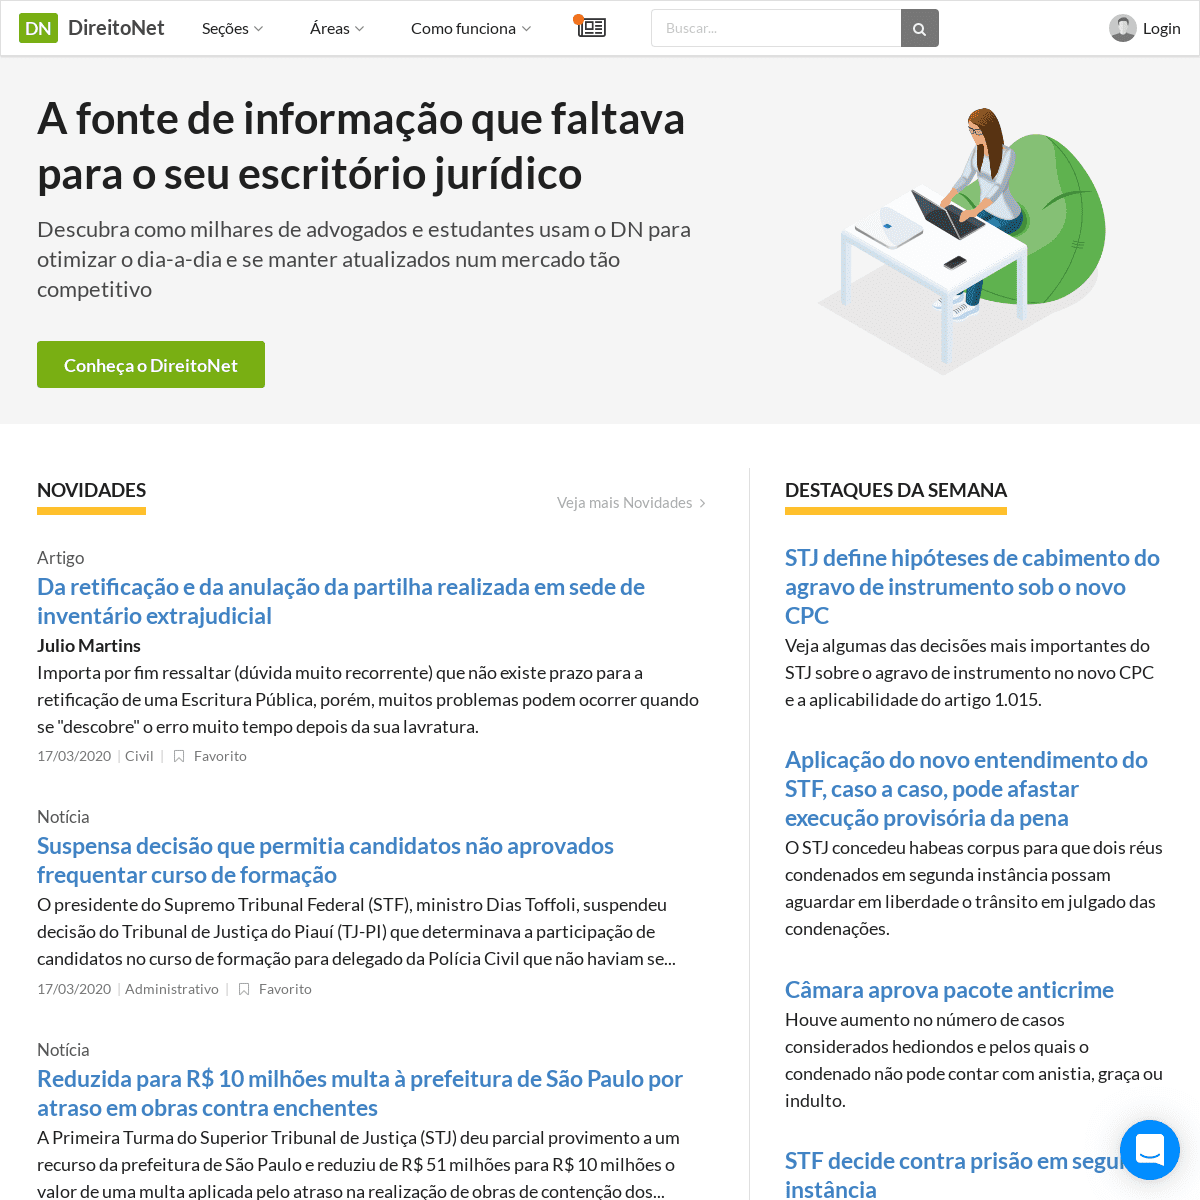 A complete backup of direitonet.com.br